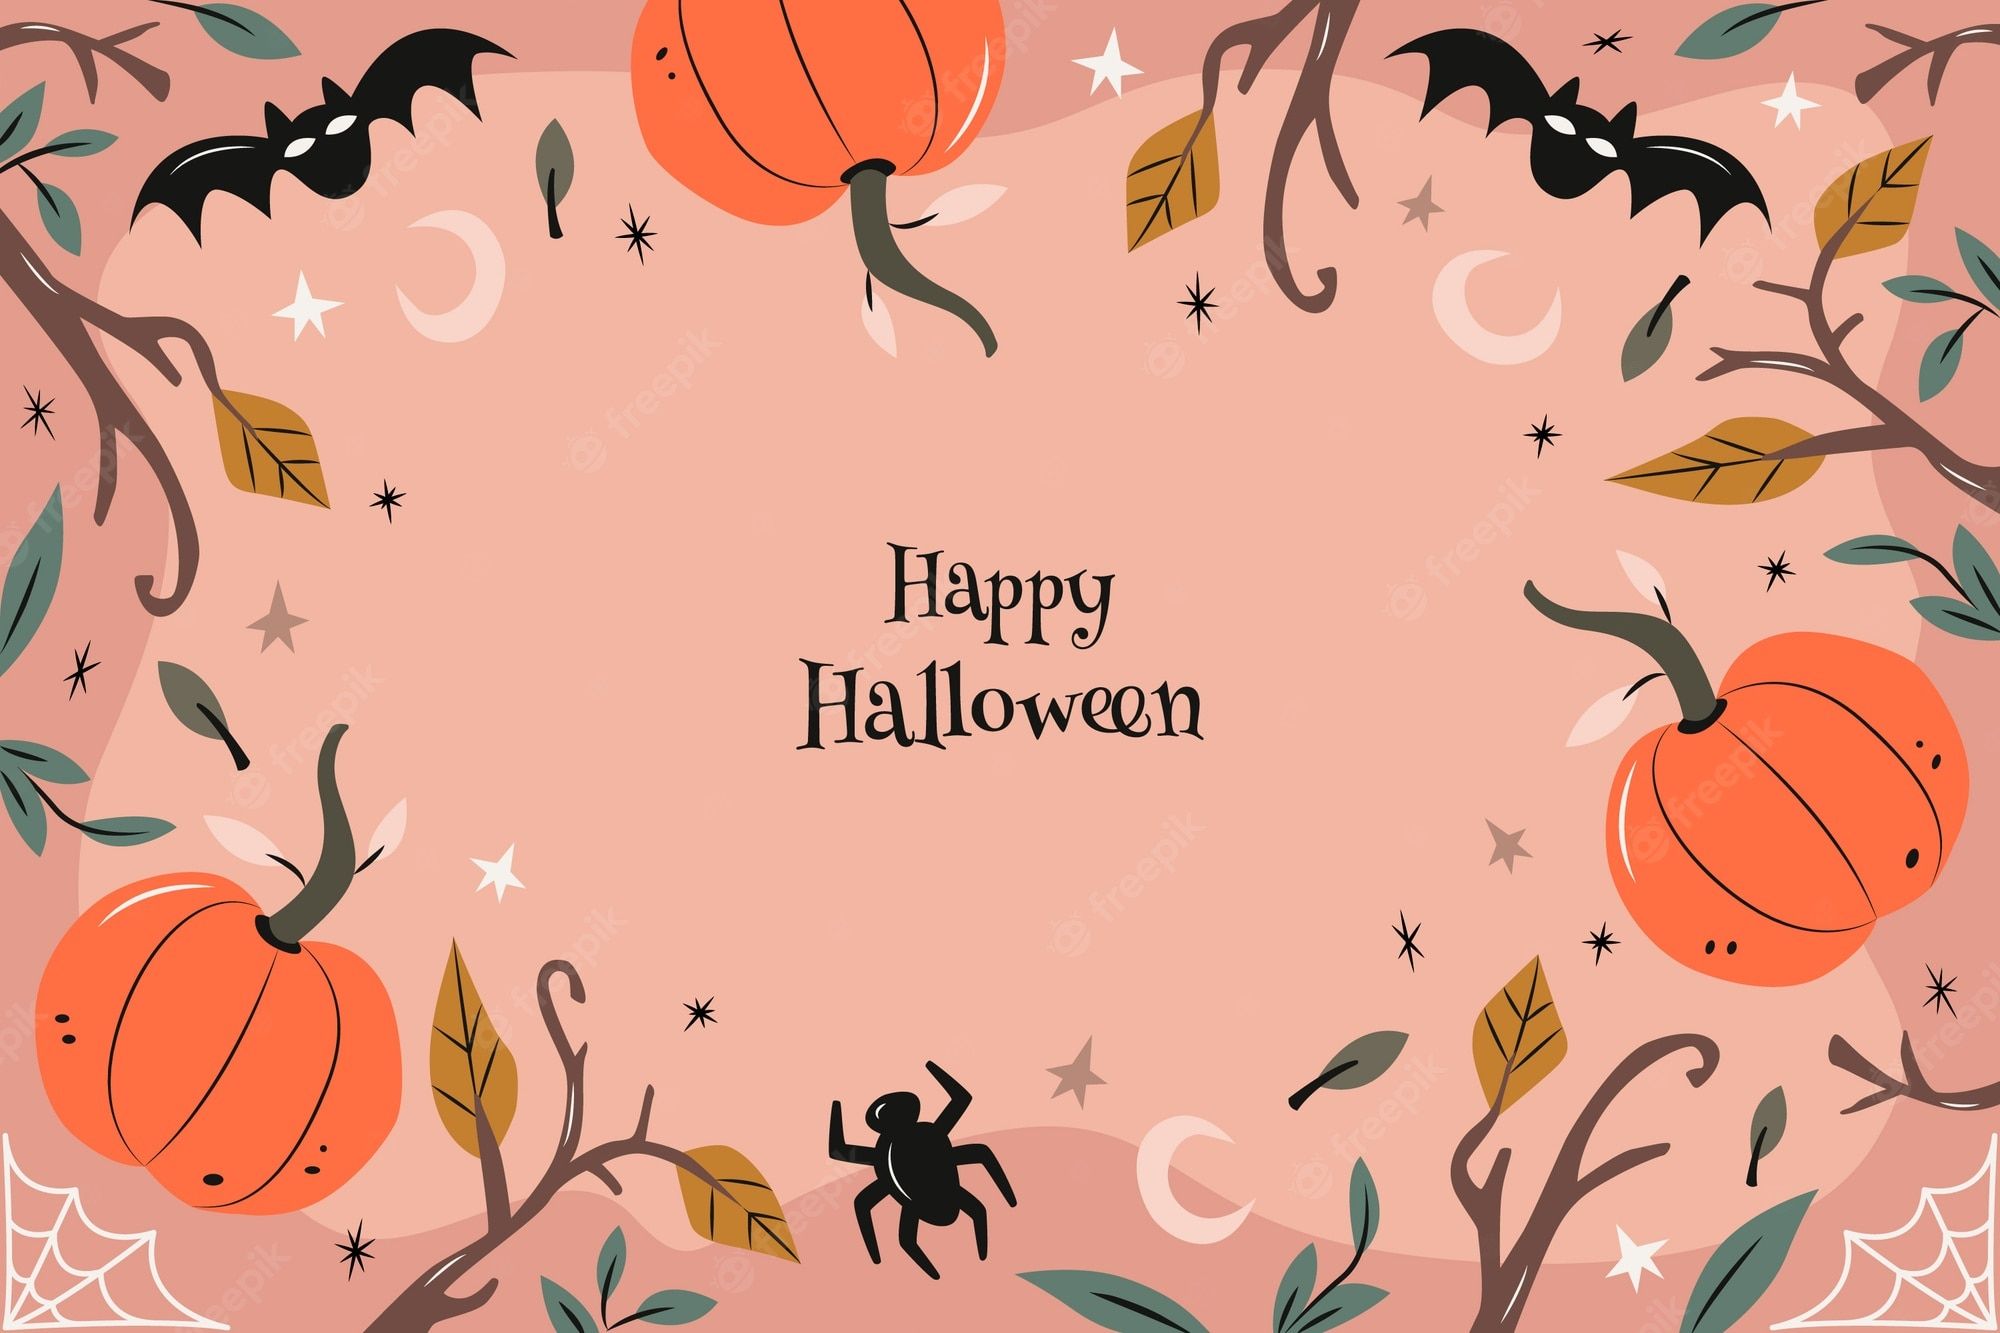 Happy Halloween background with pumpkins, bats, and spider - Halloween, Halloween desktop